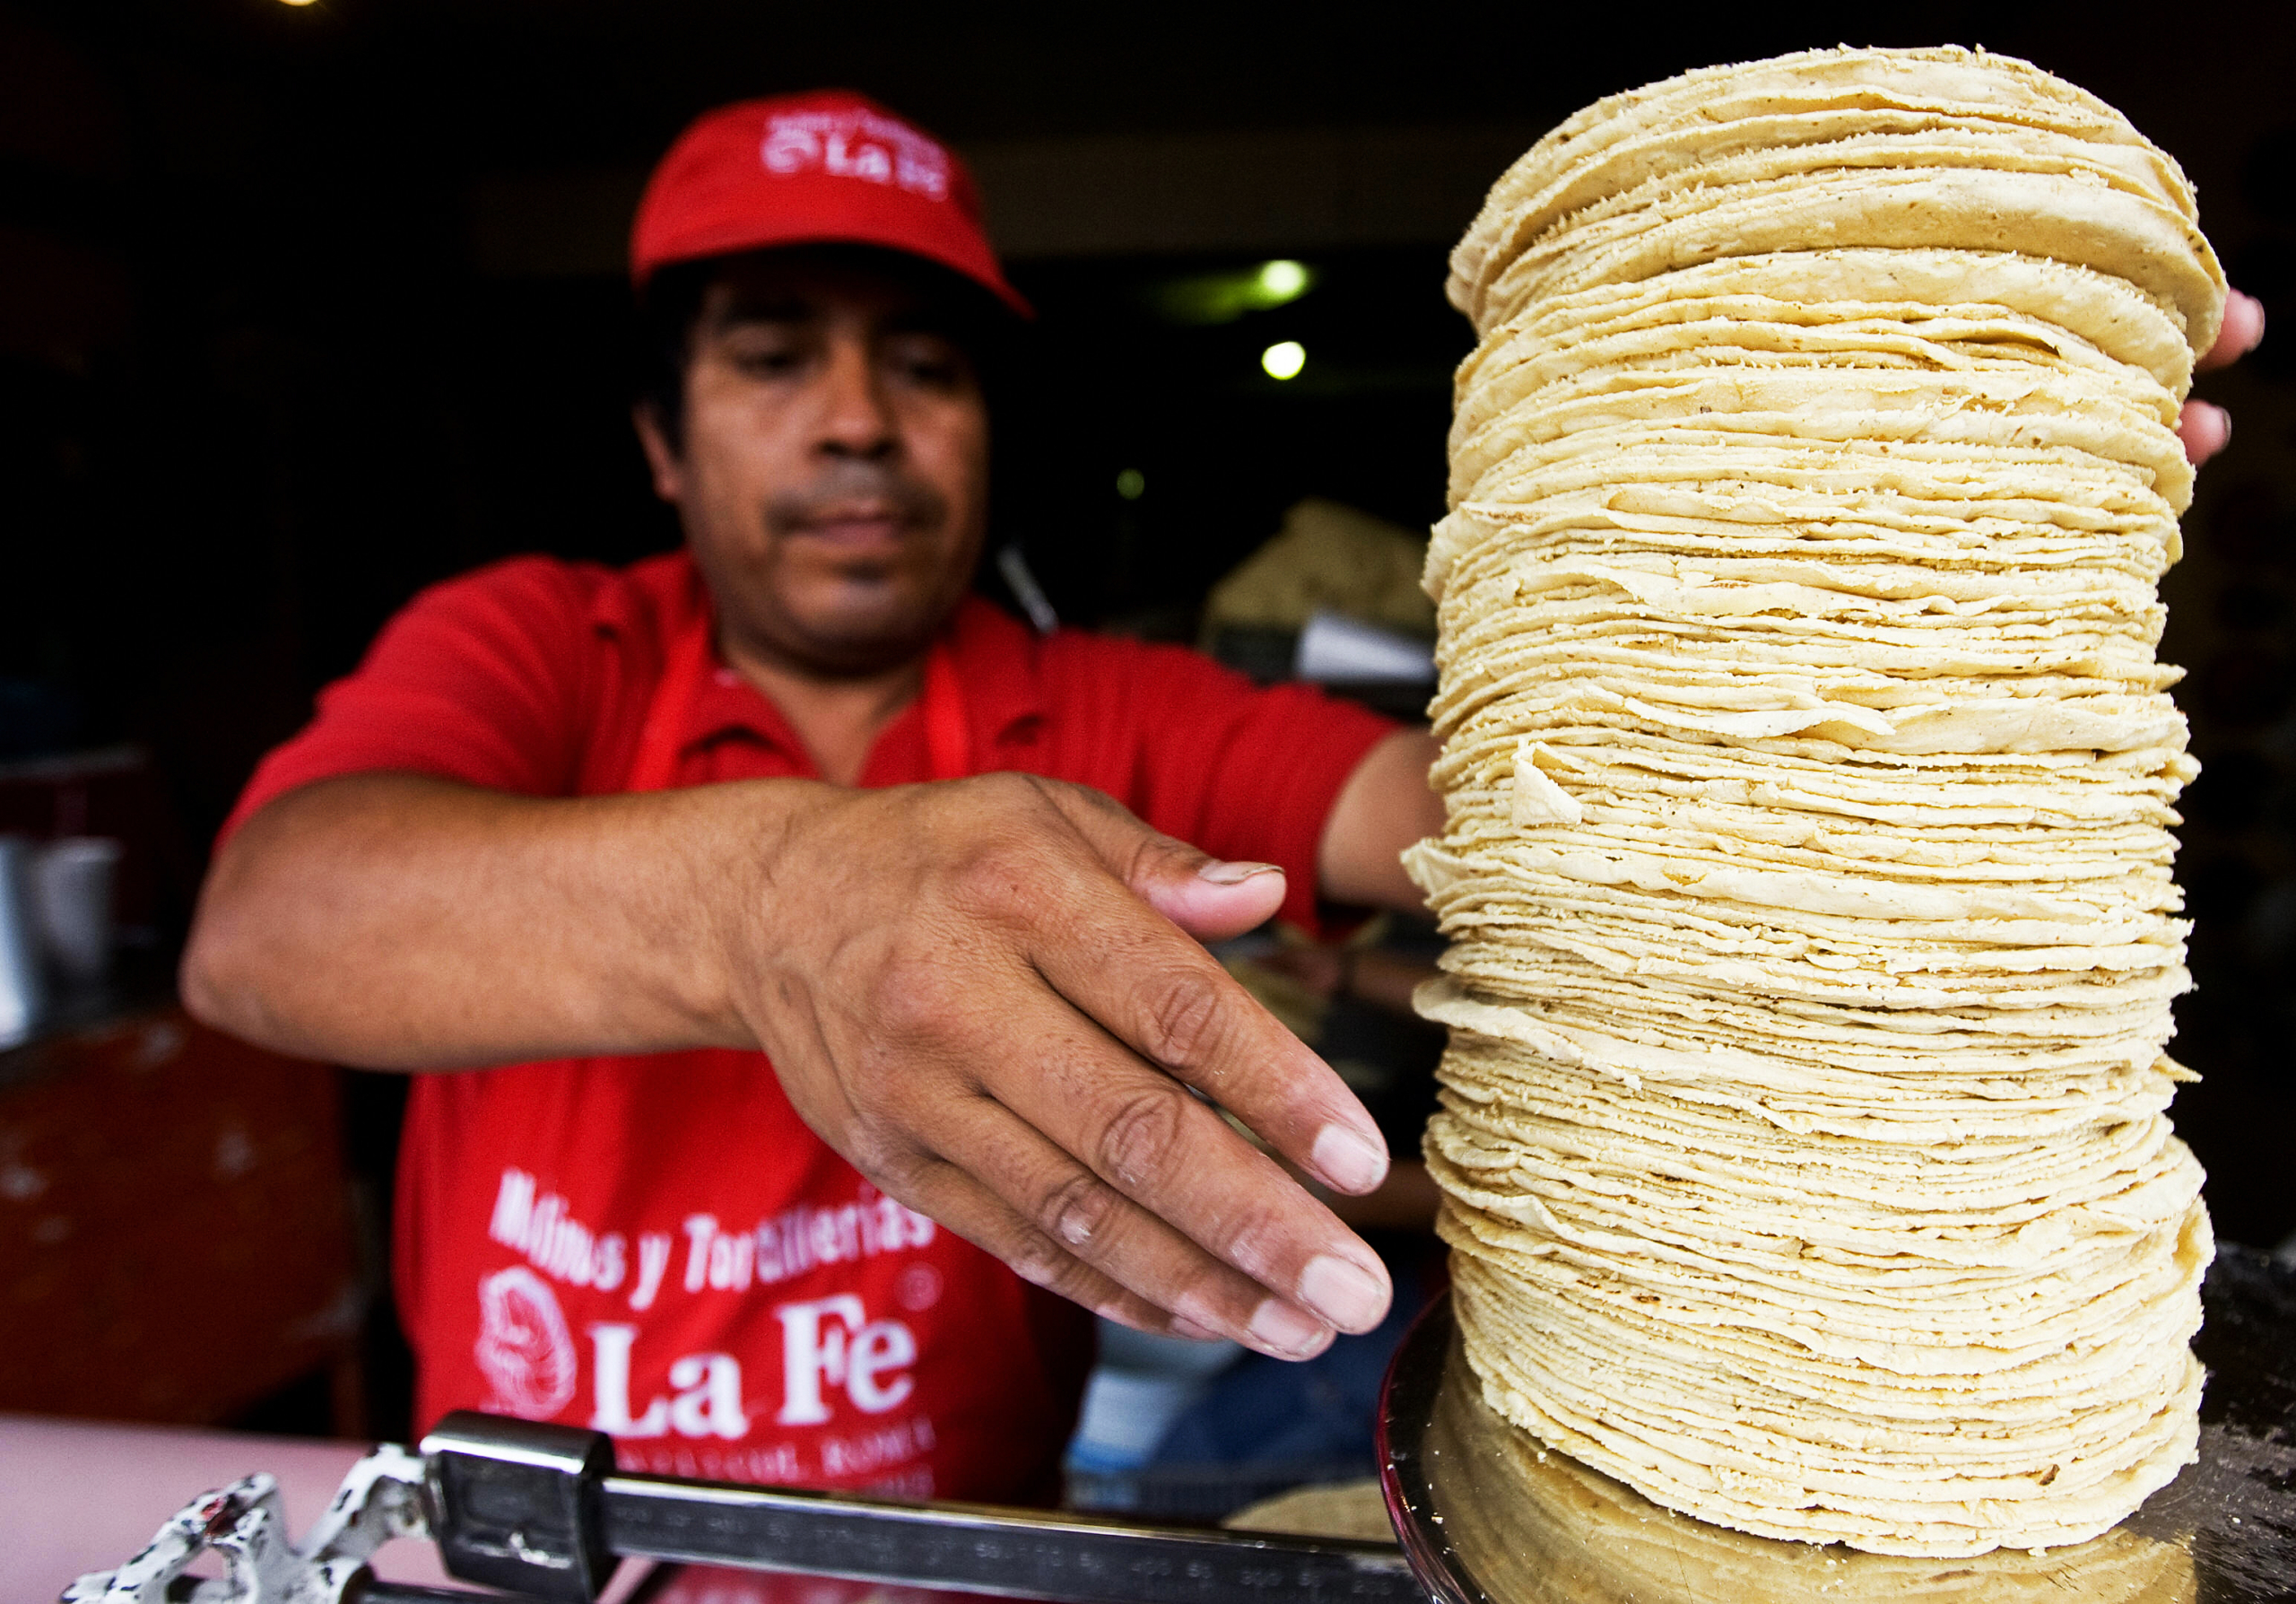 Một người bán hàng rong cân những chiếc bánh bắp truyền thống ở Mexico, vào ngày 18/06/2008. Sự phổ biến của bắp trong các bữa ăn ở Mexico khiến tỷ lệ tiếp xúc với bắp biến đổi gene và glyphosate tăng lên. (Ảnh: Ronaldo Schemidt/AFP qua Getty Images)